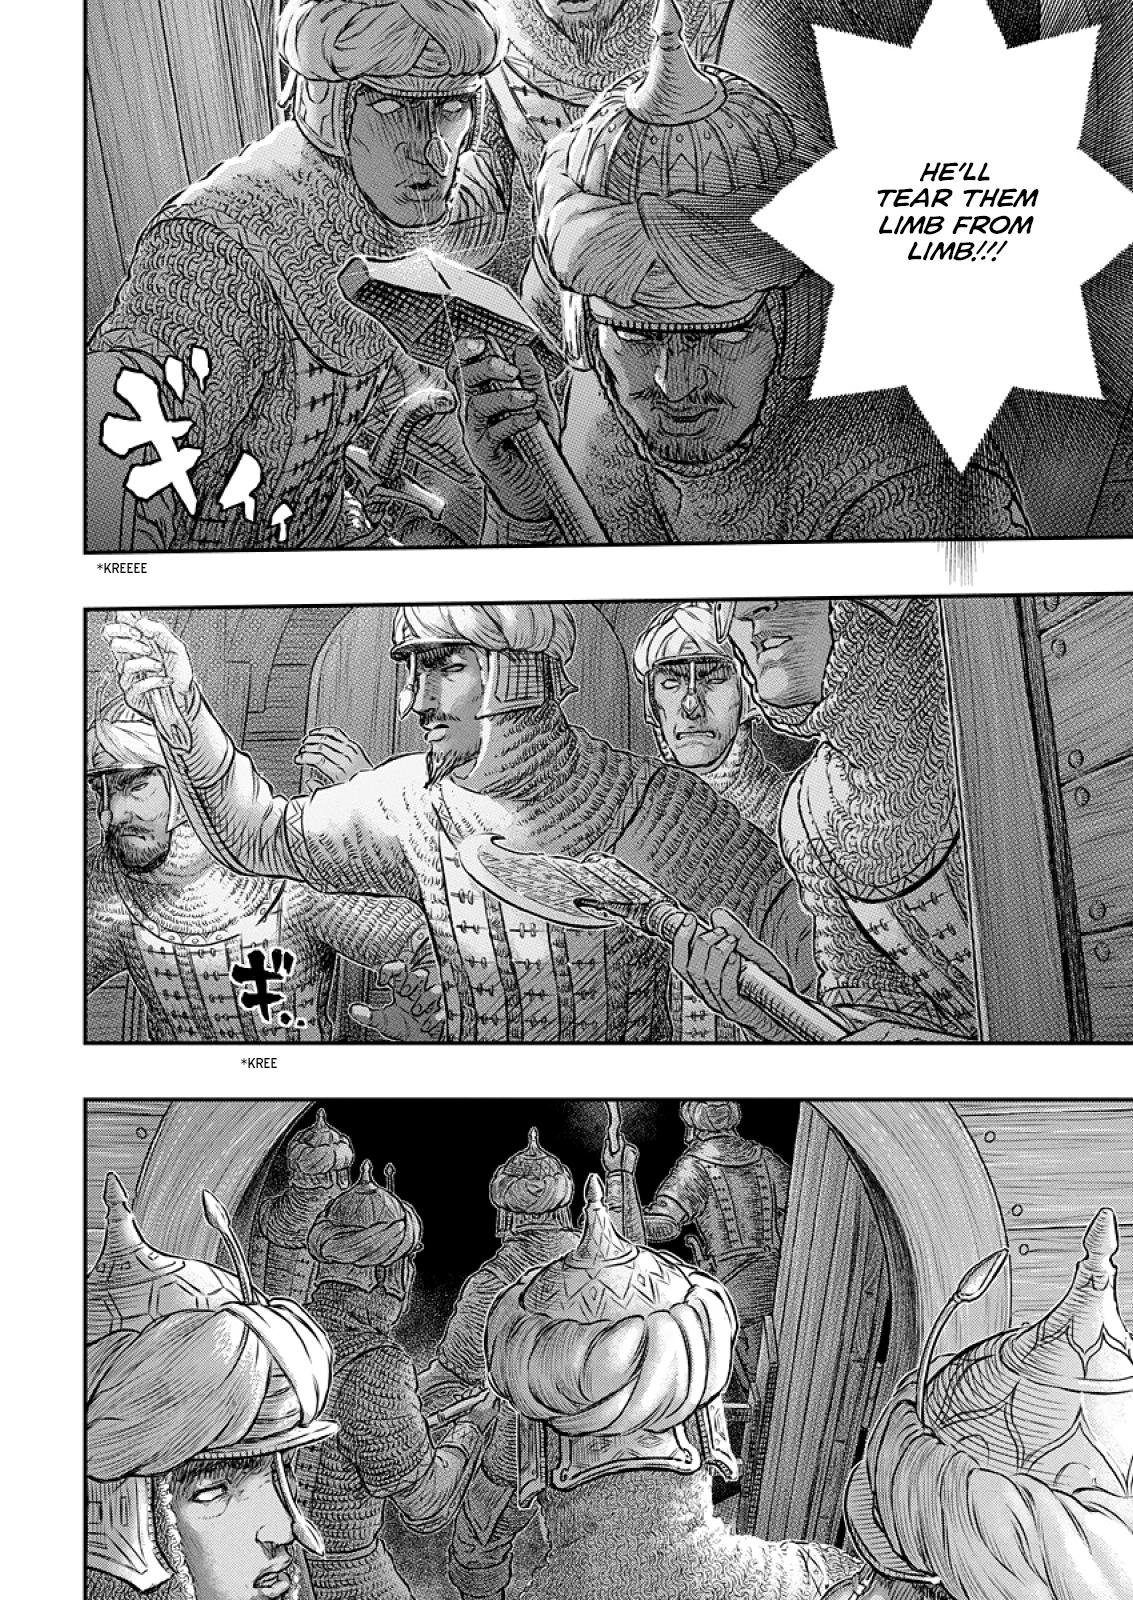 Berserk Manga Chapter 374 image 13